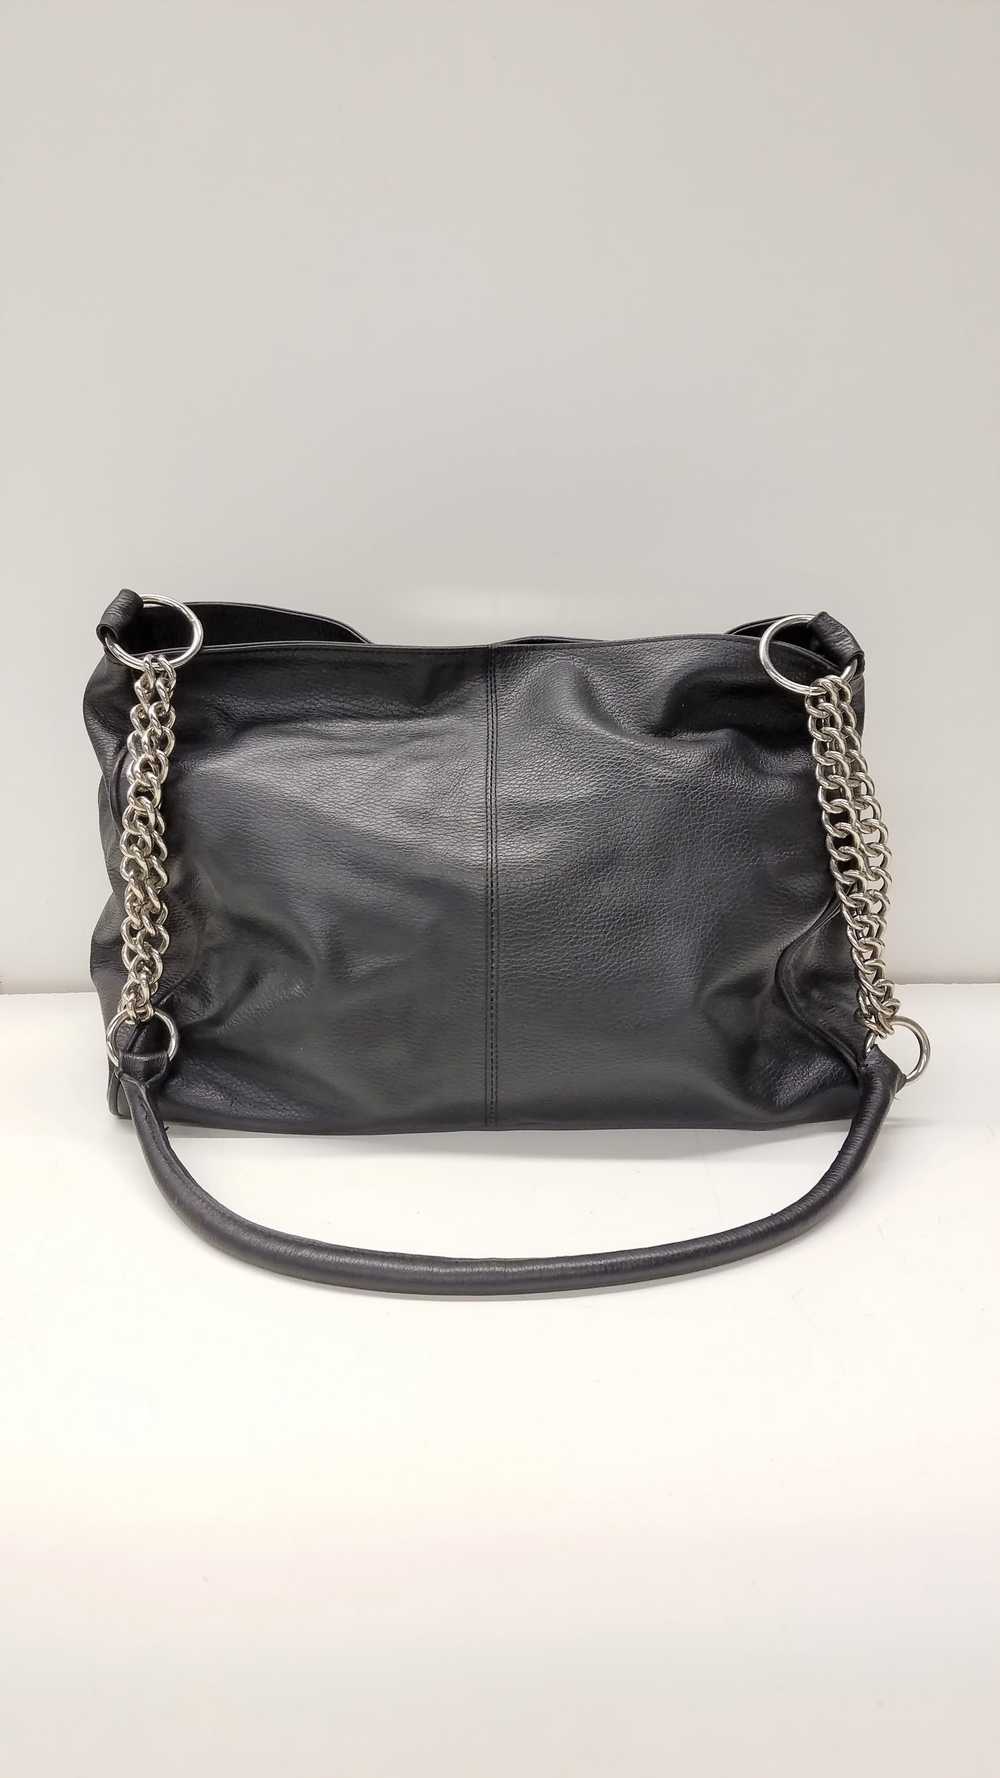 Christine Price Leather Pebbled Shoulder Bag Black - image 2